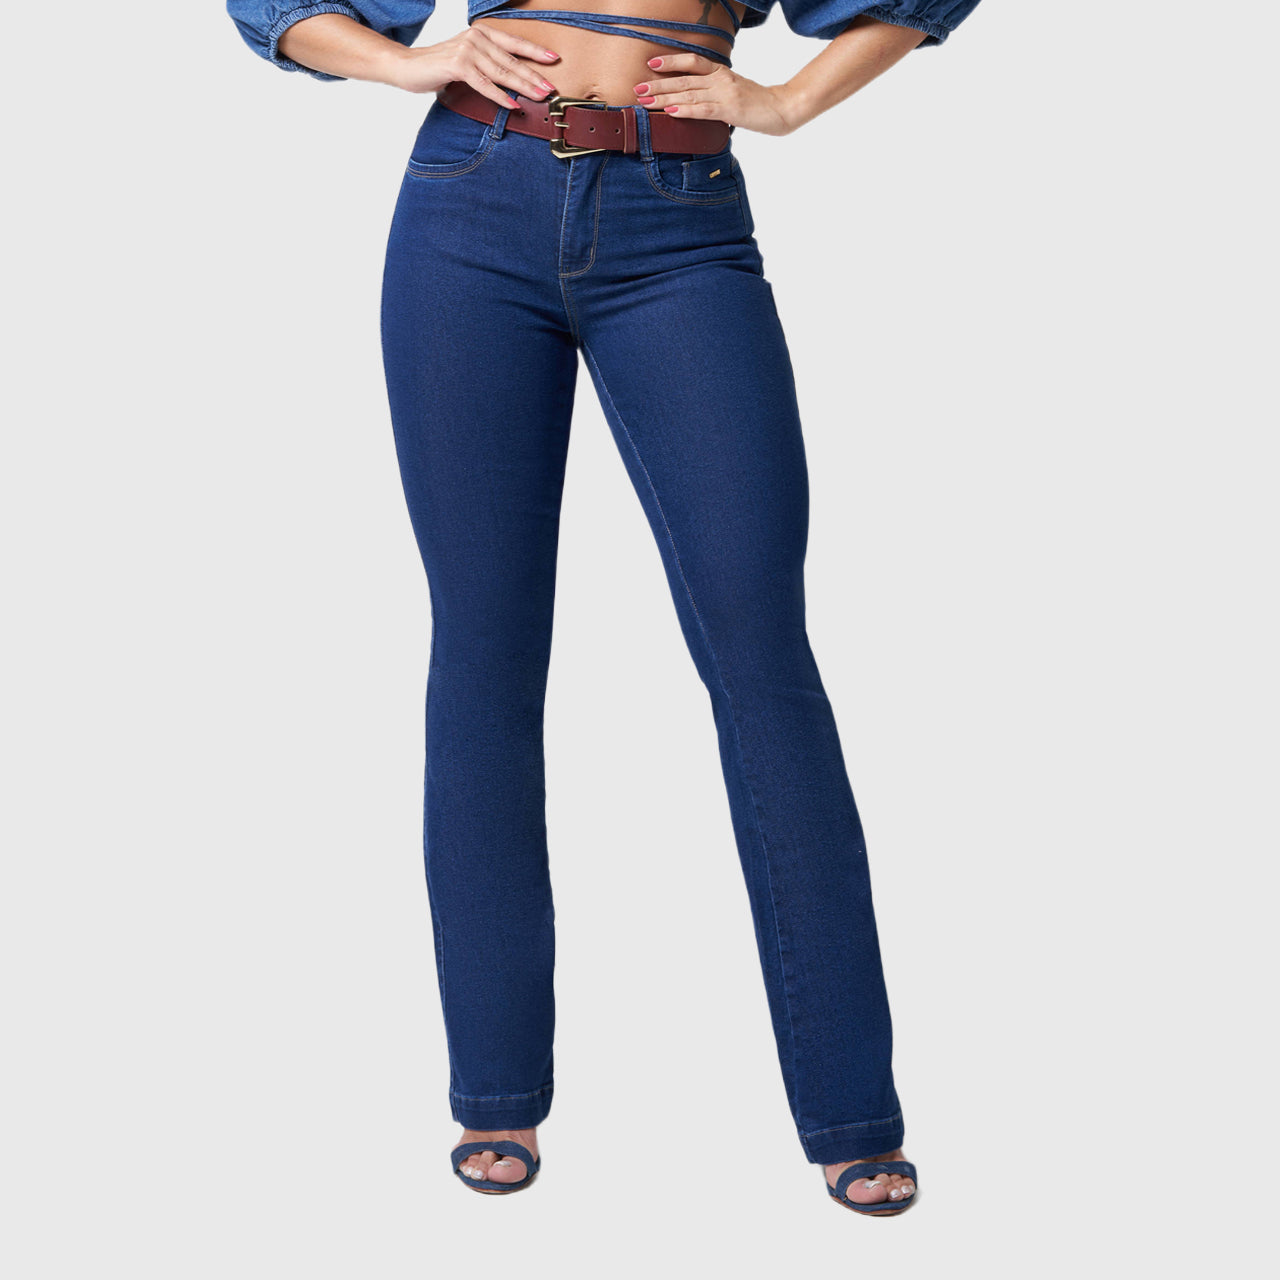 http://www.astryd.com.br/cdn/shop/files/calca-oppnus-bootcut-jeans-cintura-alta-com-cinto-frente.jpg?v=1684348950